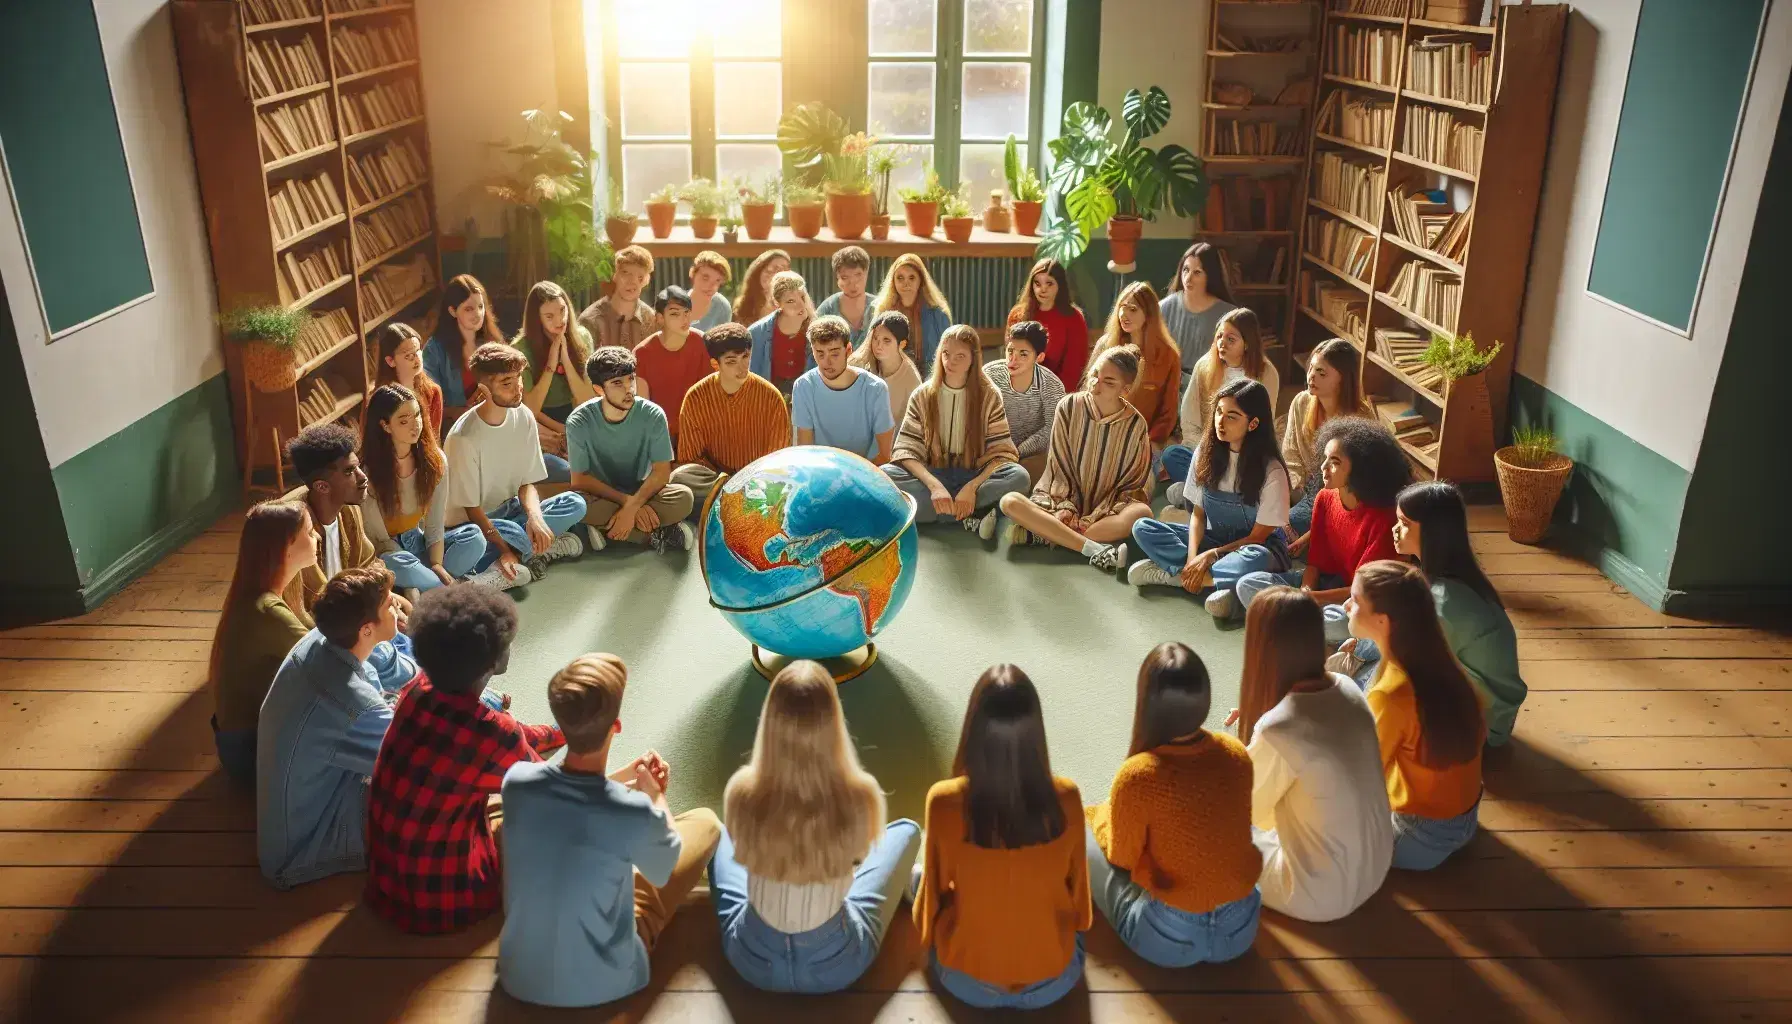 Grupo diverso de estudiantes sentados en círculo en el suelo con un globo terráqueo en el centro, en una sala iluminada con luz natural y estanterías con libros.